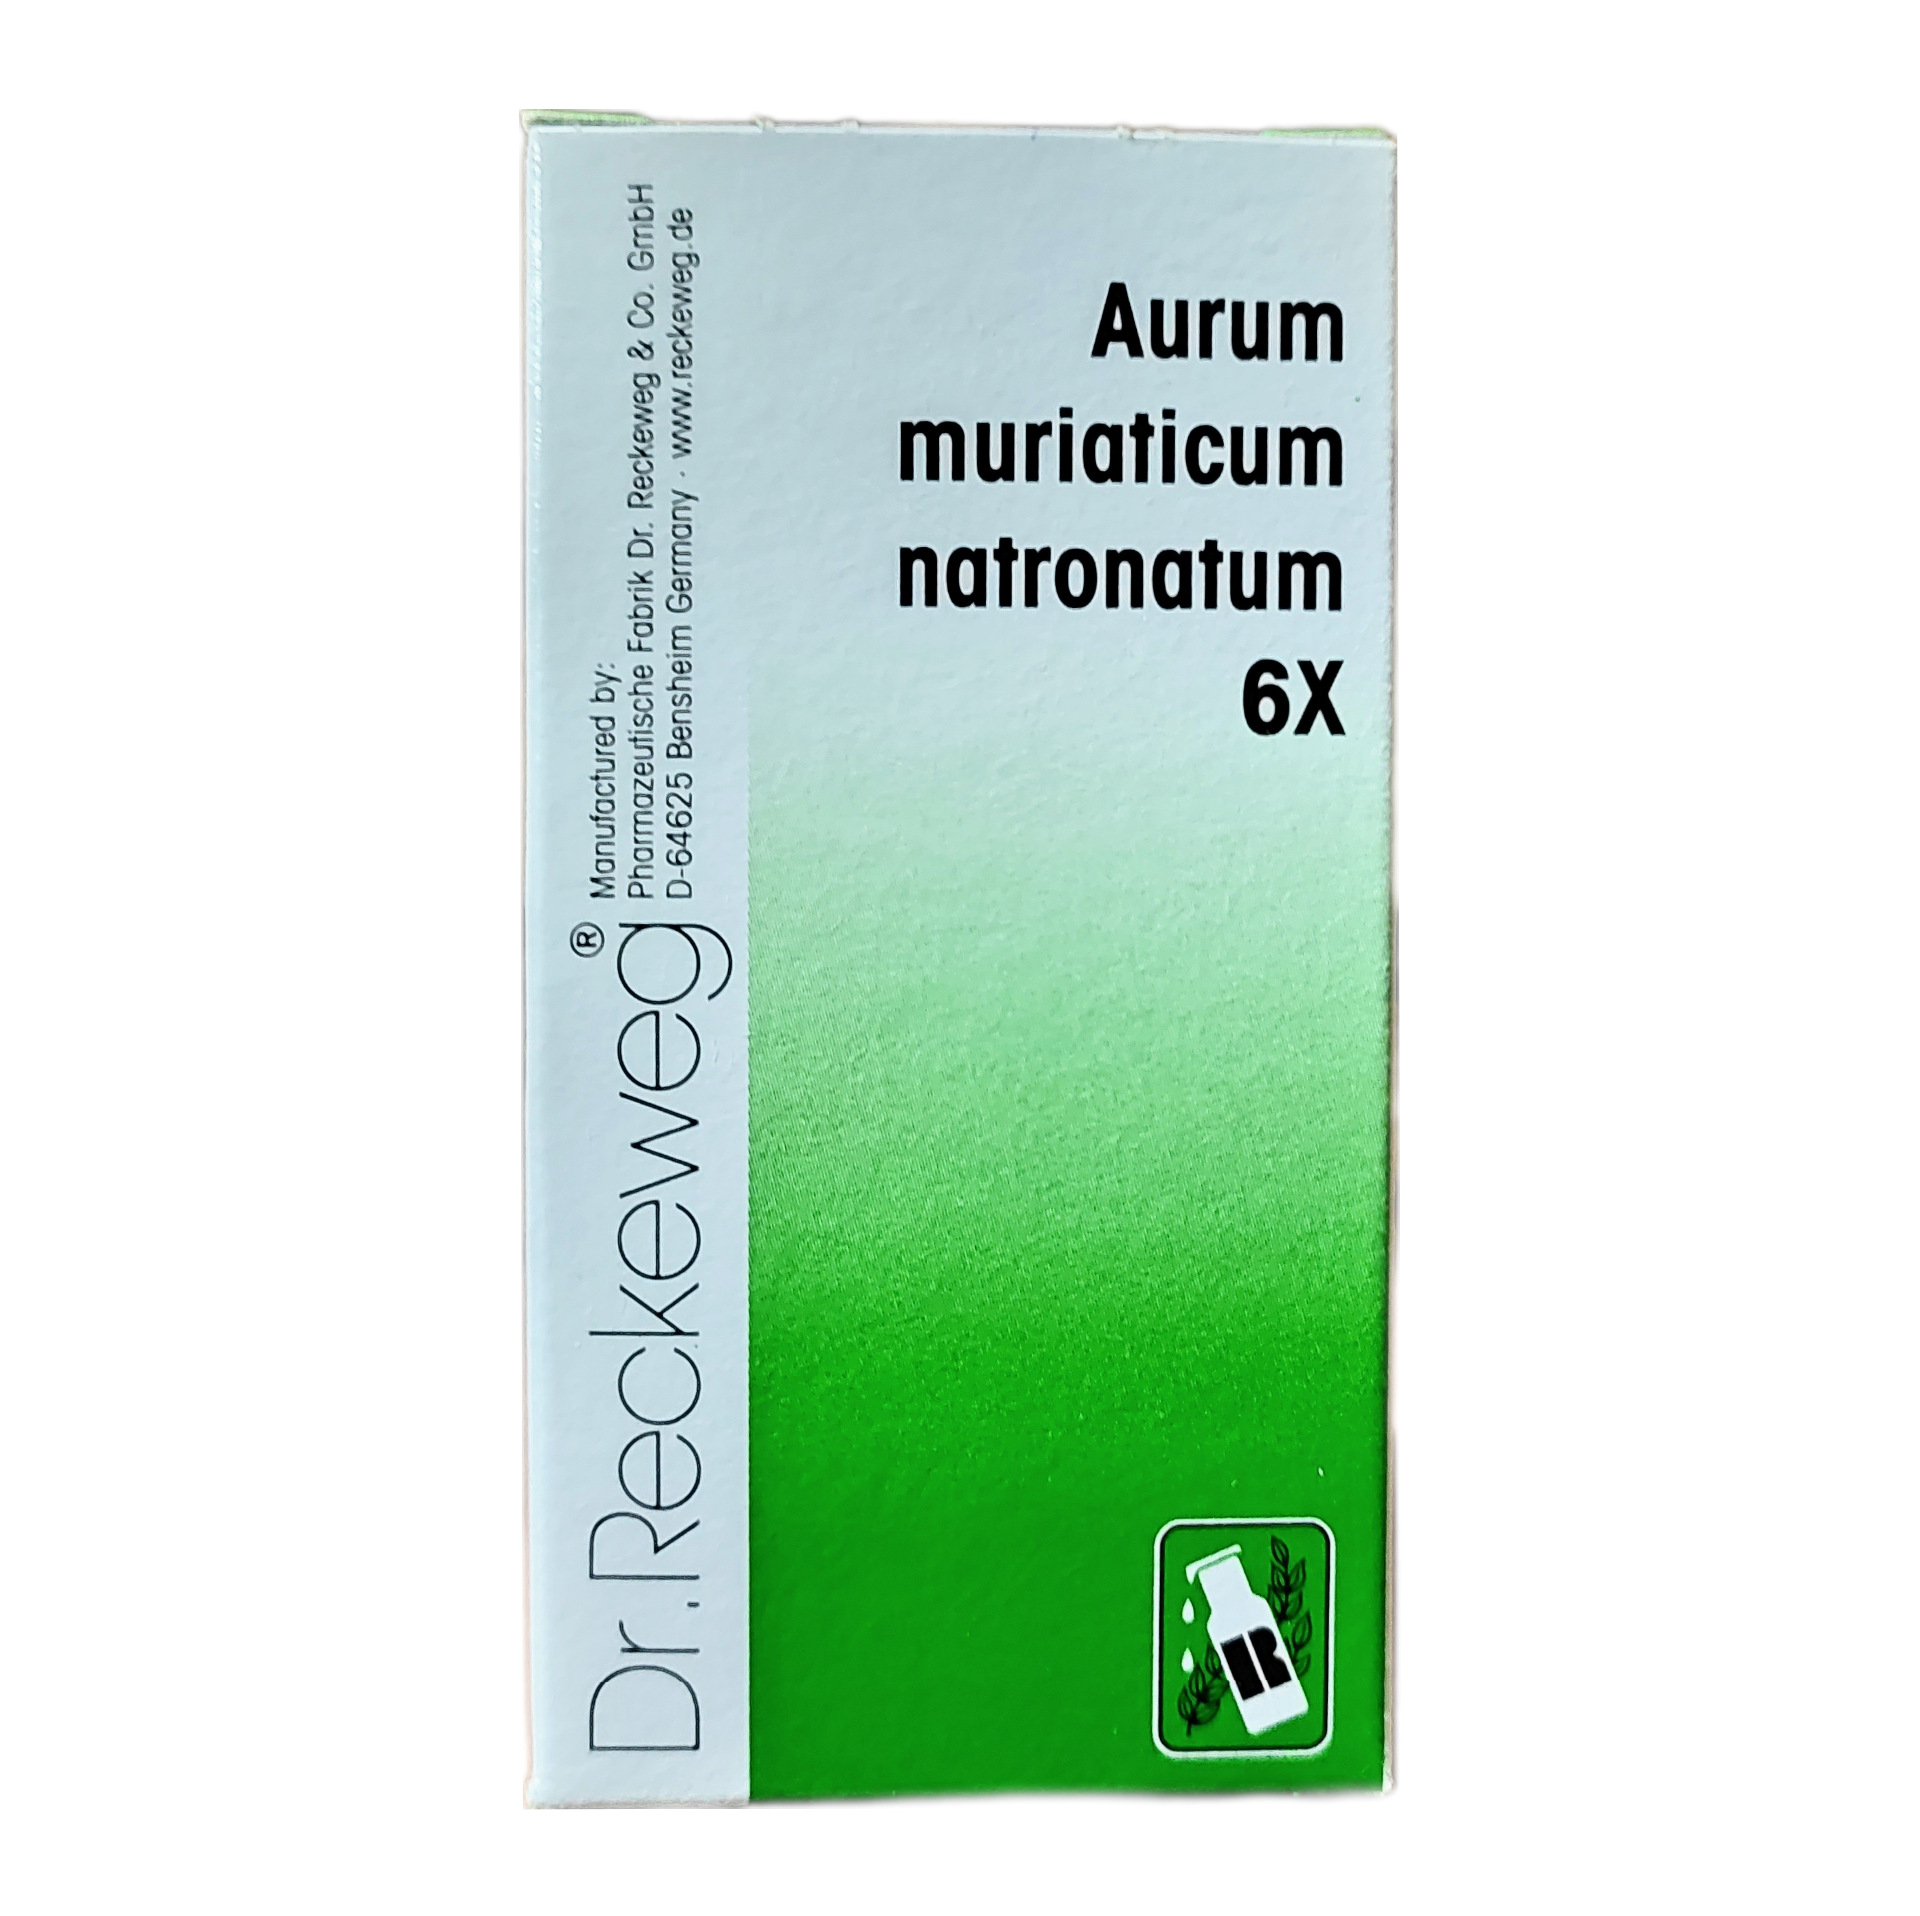 Aurum muriaticum natronatum 6x